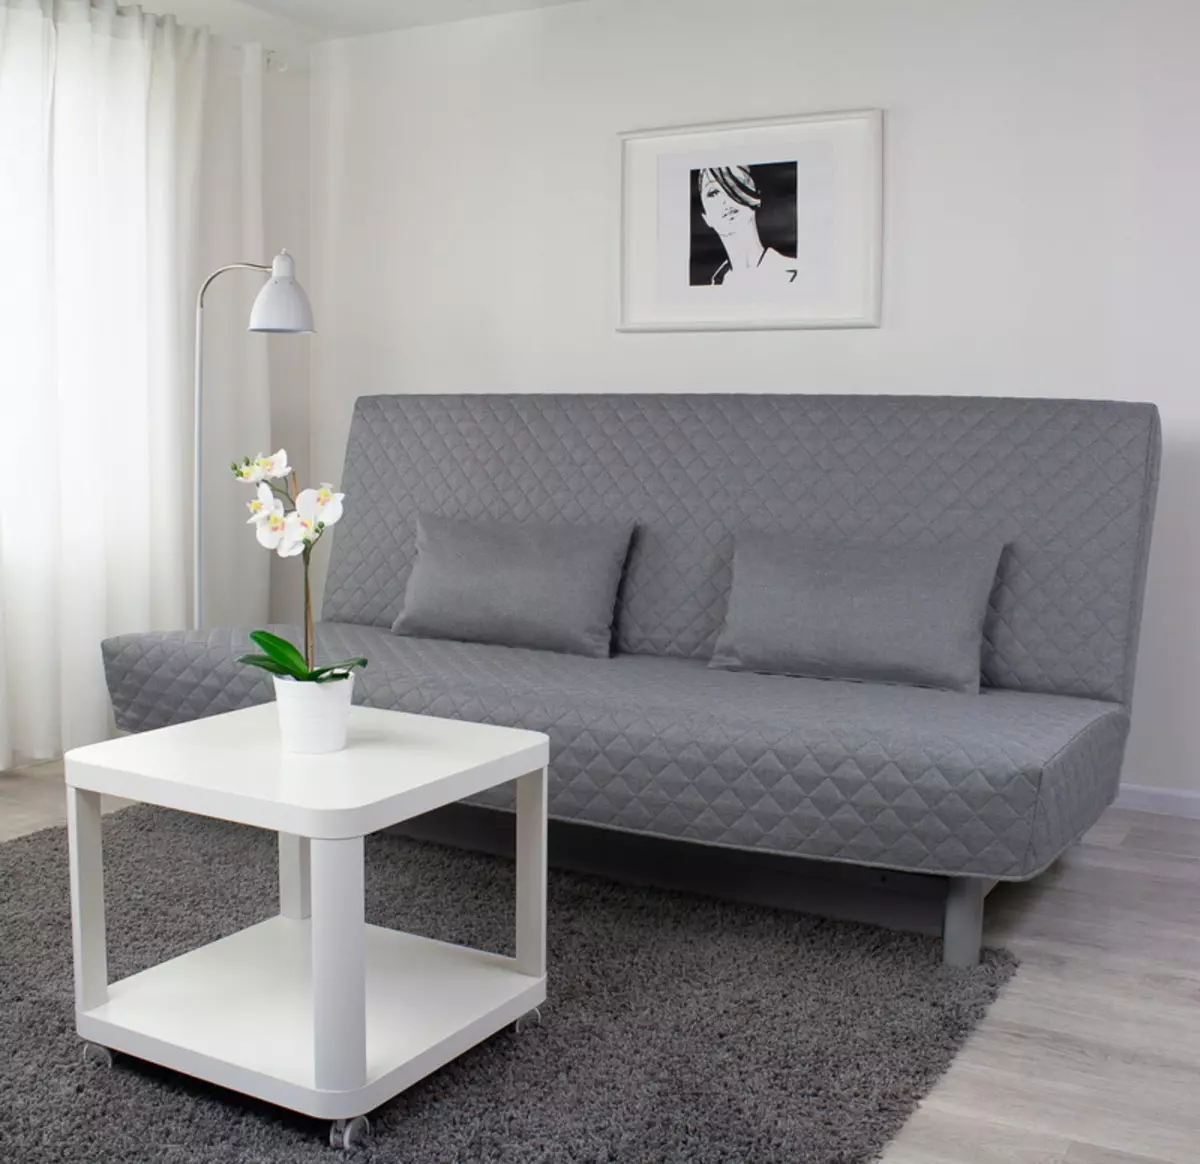 Θήκη στον καναπέ IKEA: Επιλογή κλινοσκεπασμάτων για γωνιακούς καναπέδες χωρίς υποβραχιόνια, καθολικά καλύμματα και άλλες επιλογές 8963_4